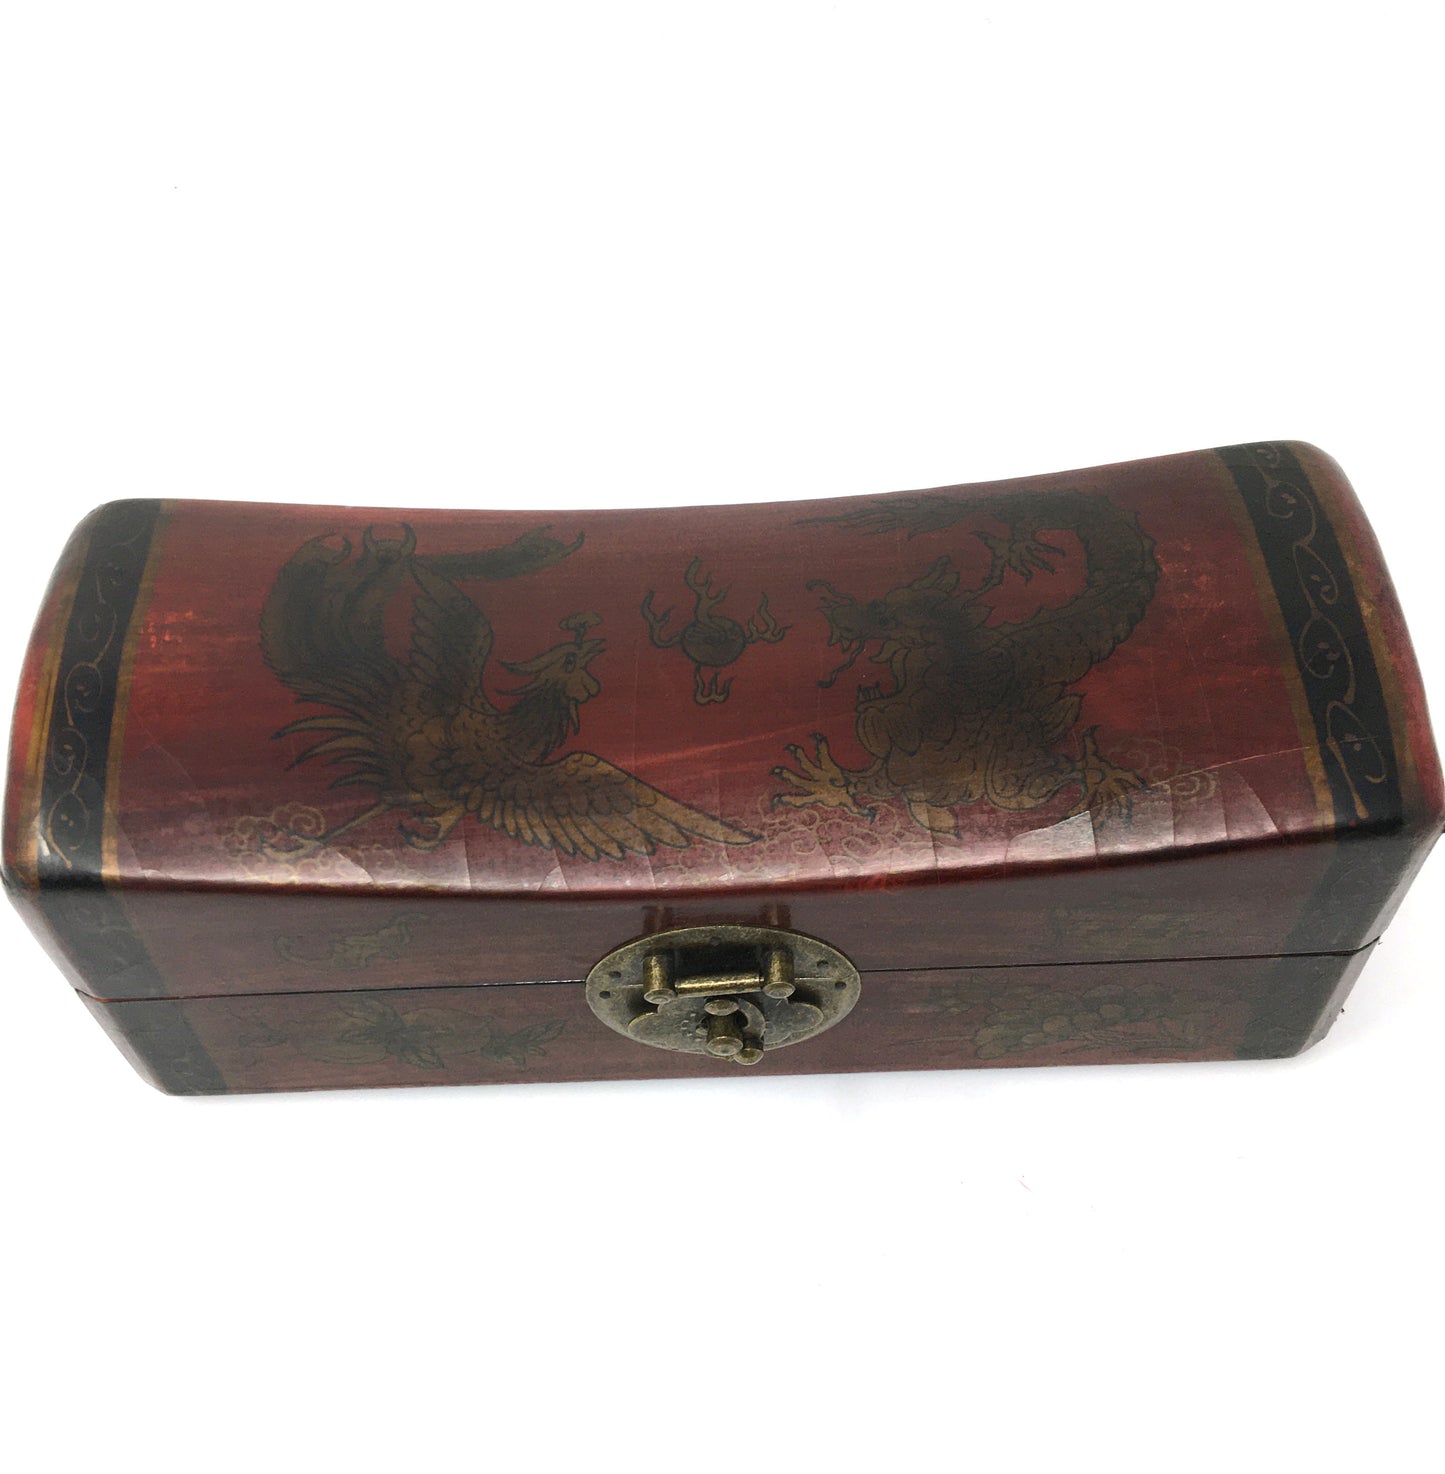 Decorative Keepsake Trinket Wooden Storage Box With Metal Lock Metal Handles